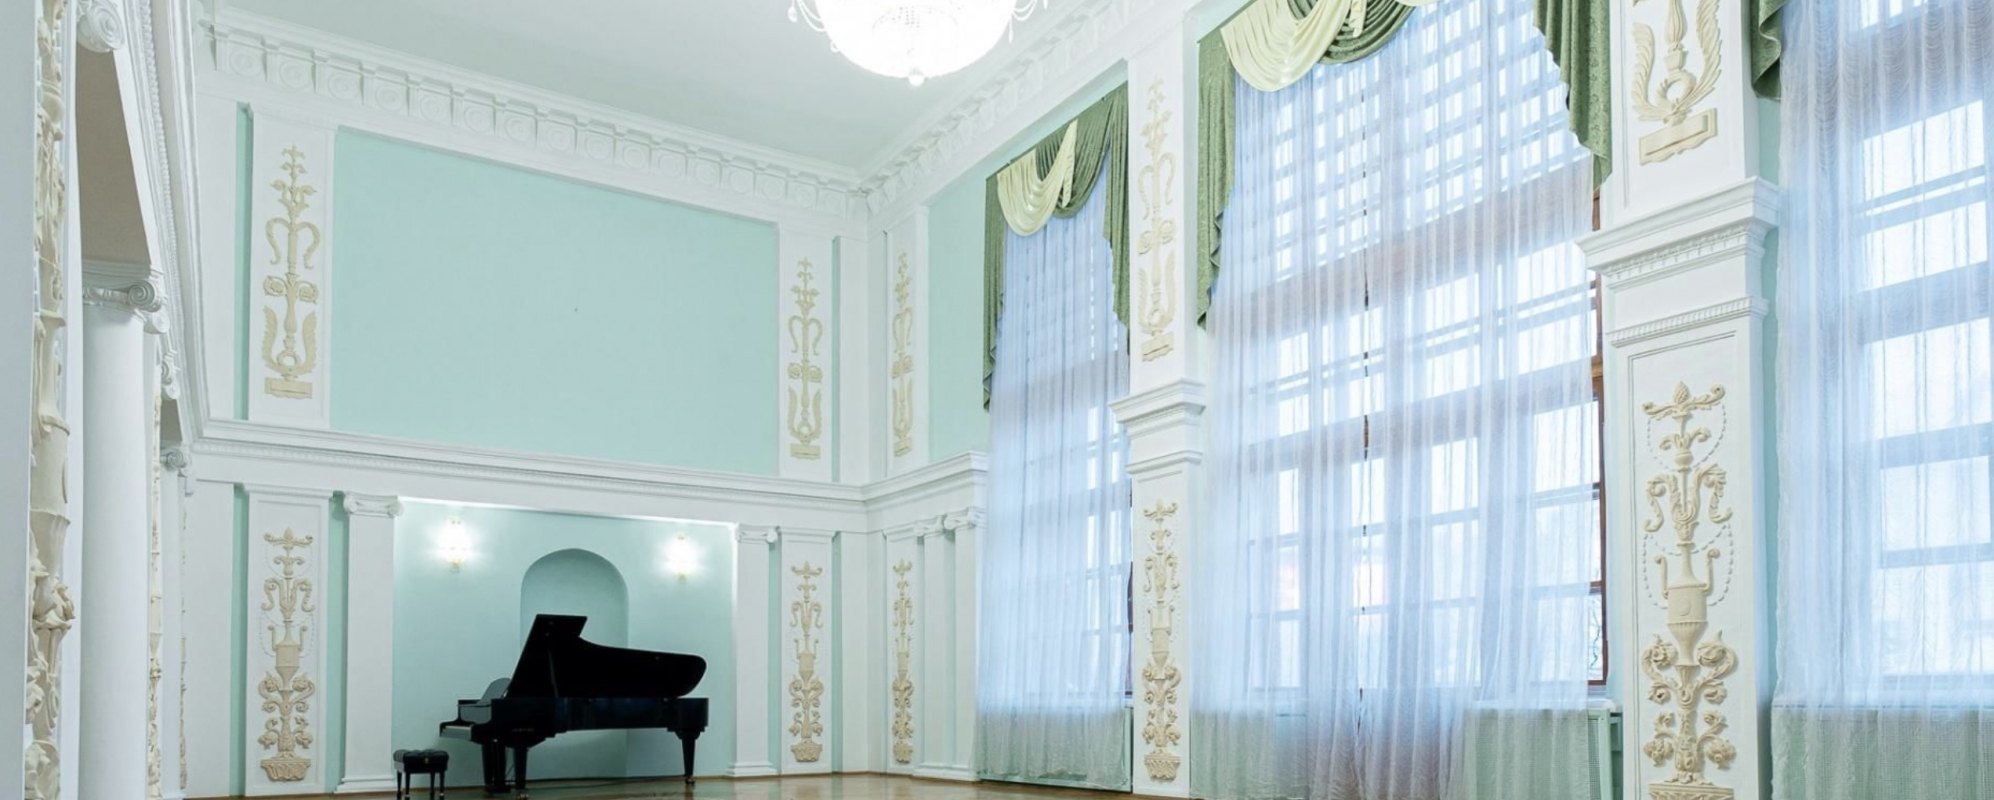 Фотографии концертного зала Романсовая гостиная Курской государственная филармонии